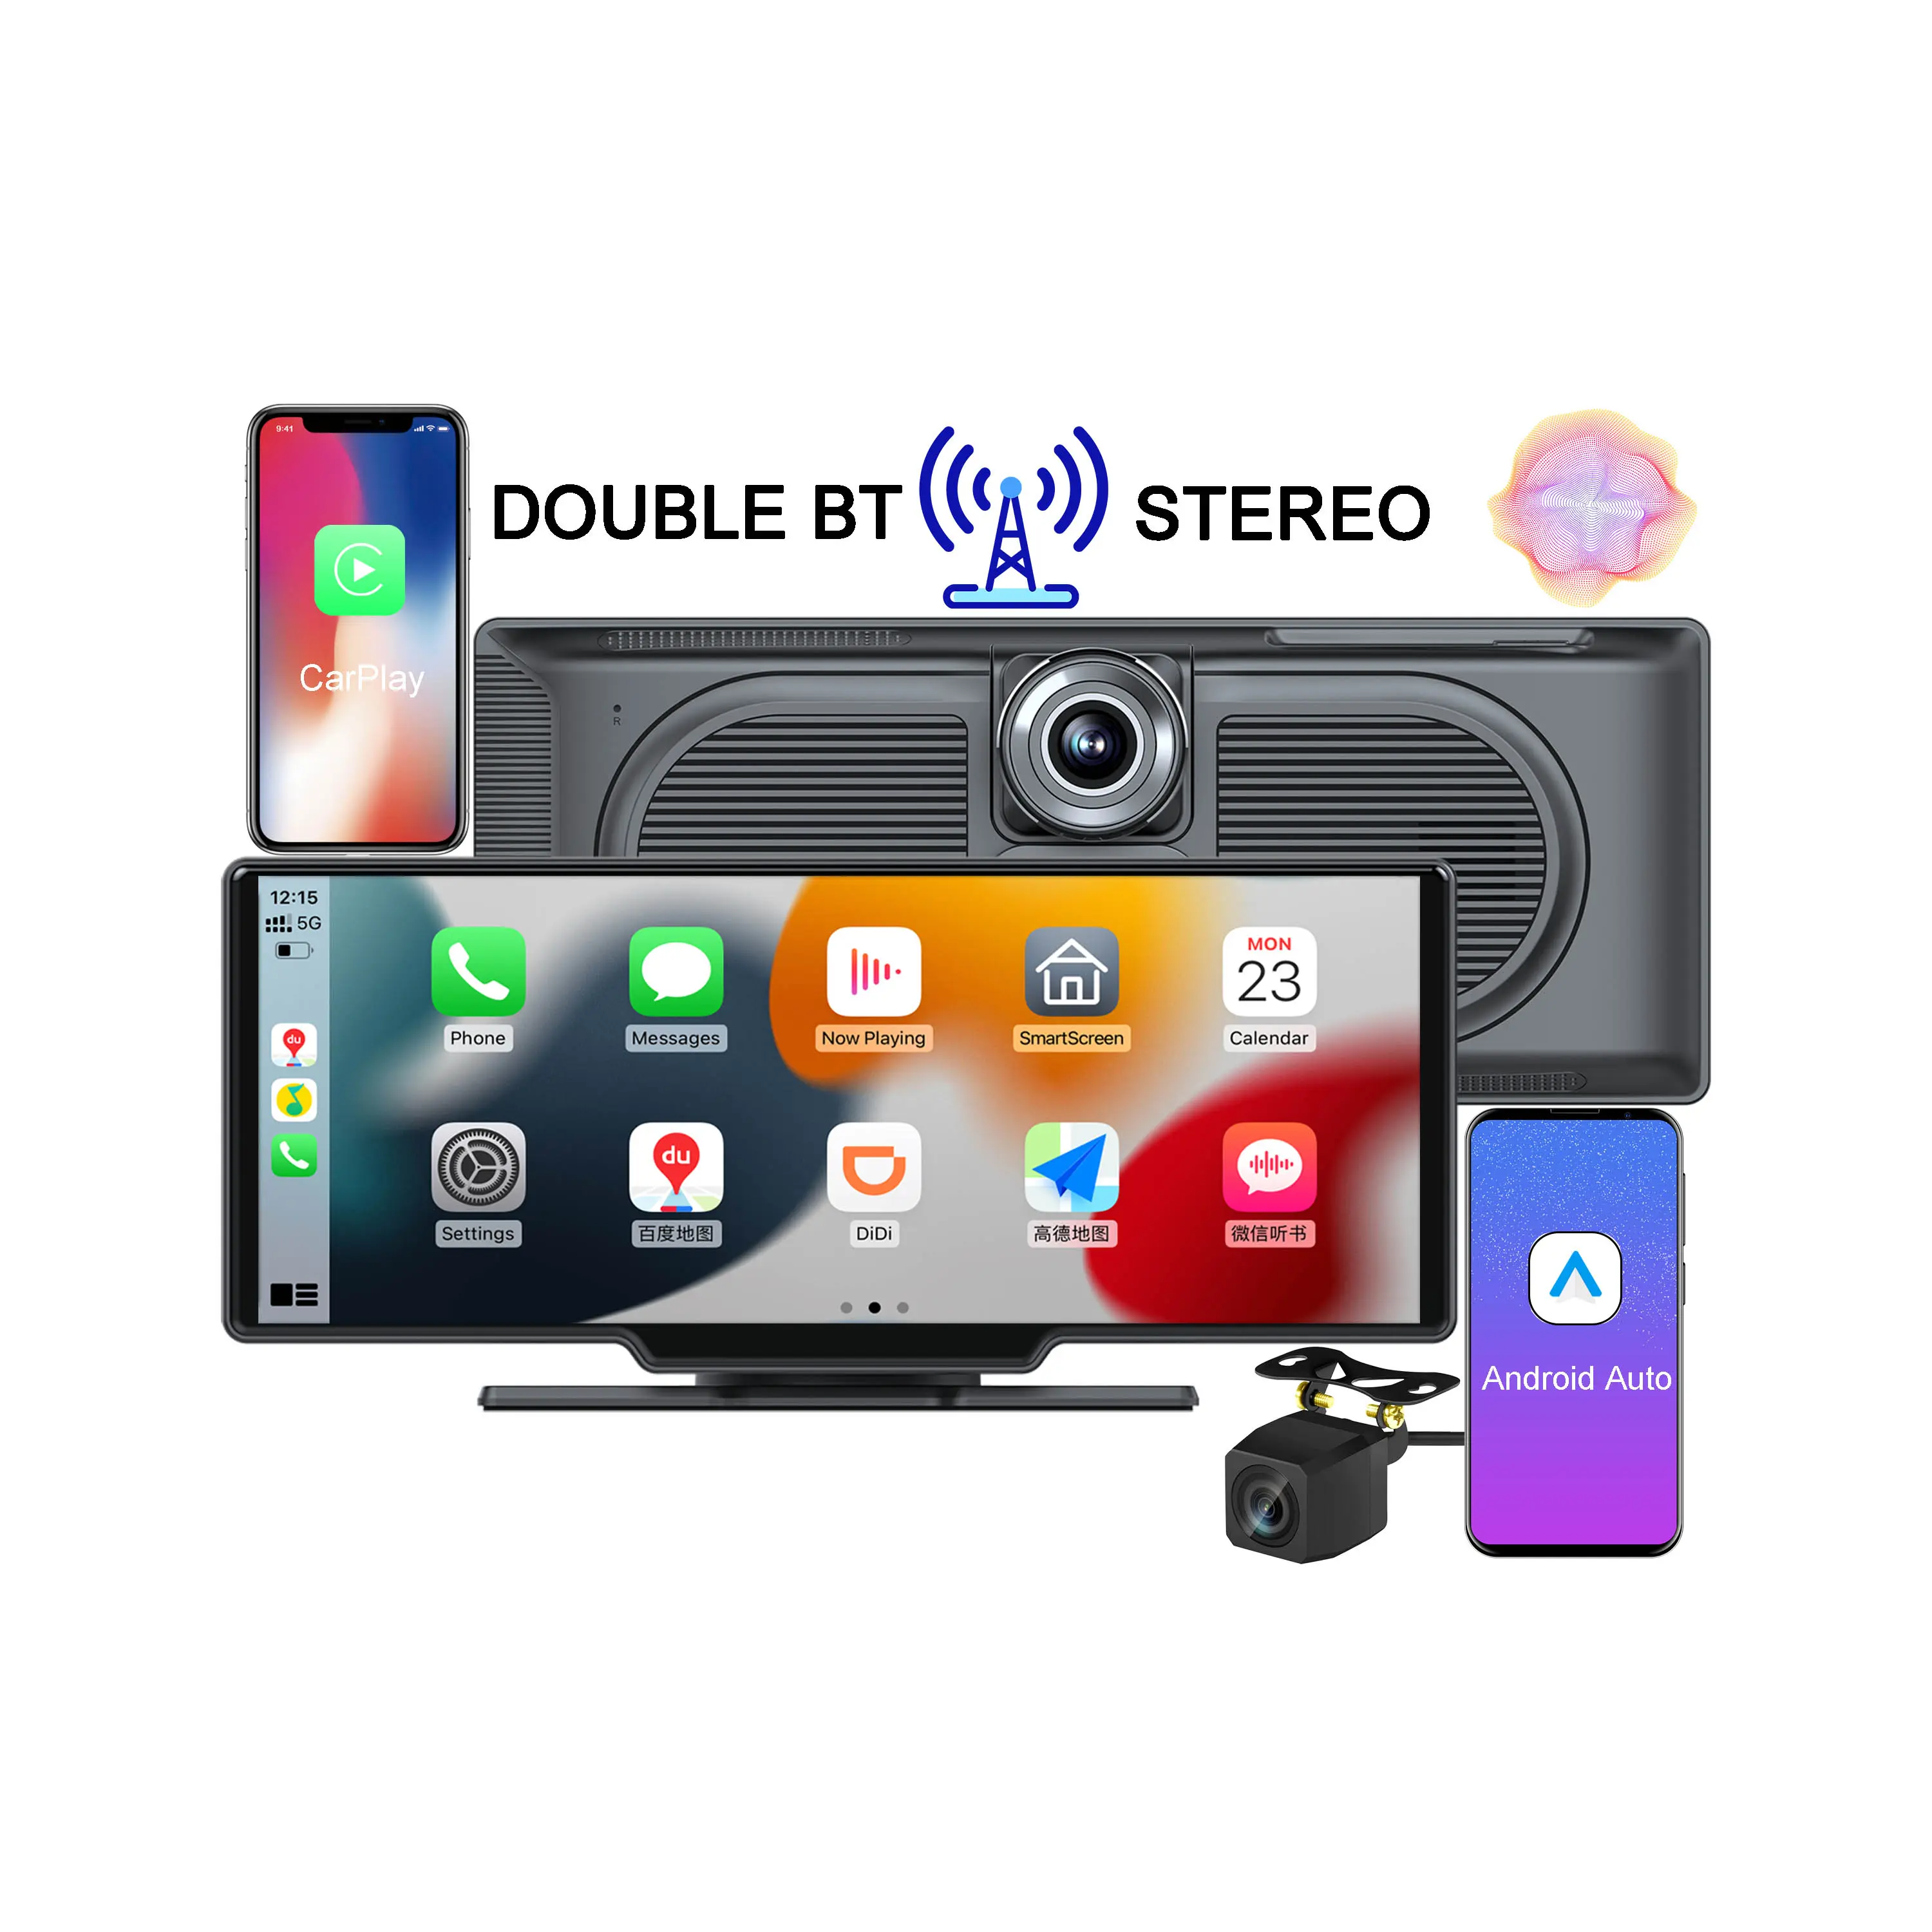 Autoradio Android nuovo Maustor doppio BT stereo nuovo anno 2023 Autoradio Carplay senza fili da 10,26 pollici Sistema audio DVD con Dashcam e lettore MP5